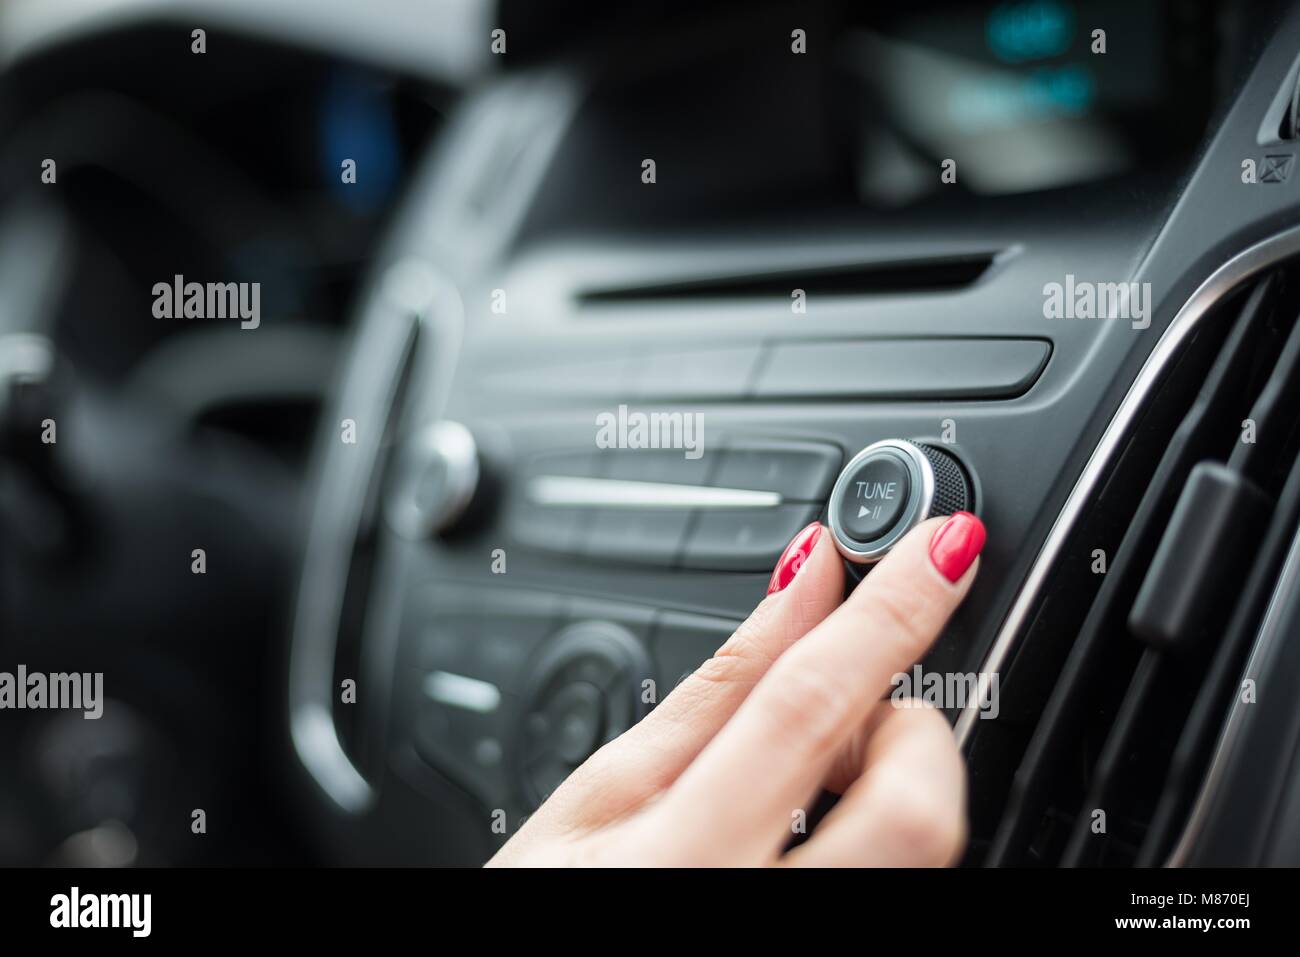 Femme changement de fréquence sur l'autoradio. Intérieur voiture moderne  Photo Stock - Alamy